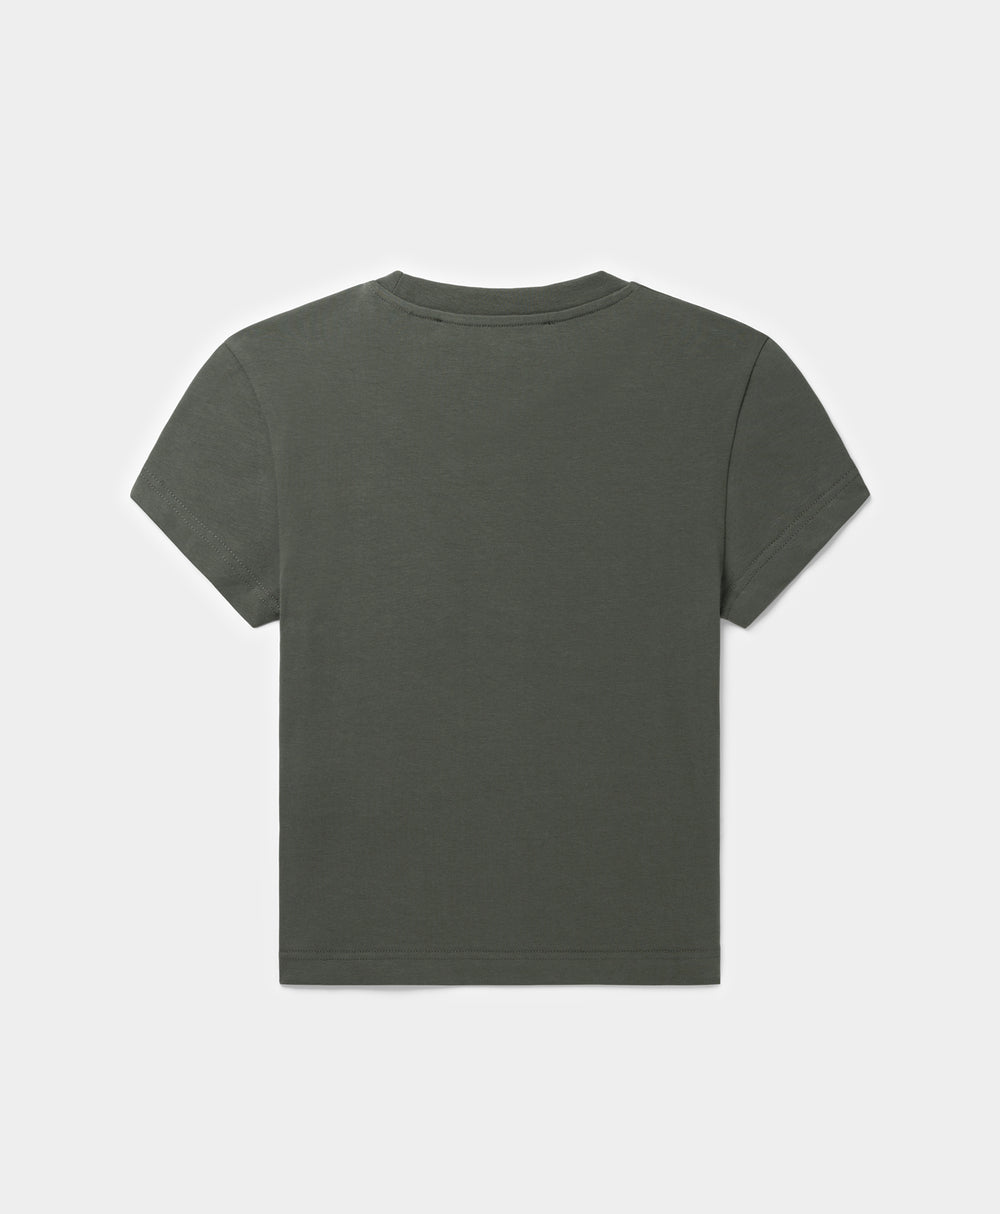 DP - Chimera Green Glow Cropped T-Shirt - Packshot - Rear